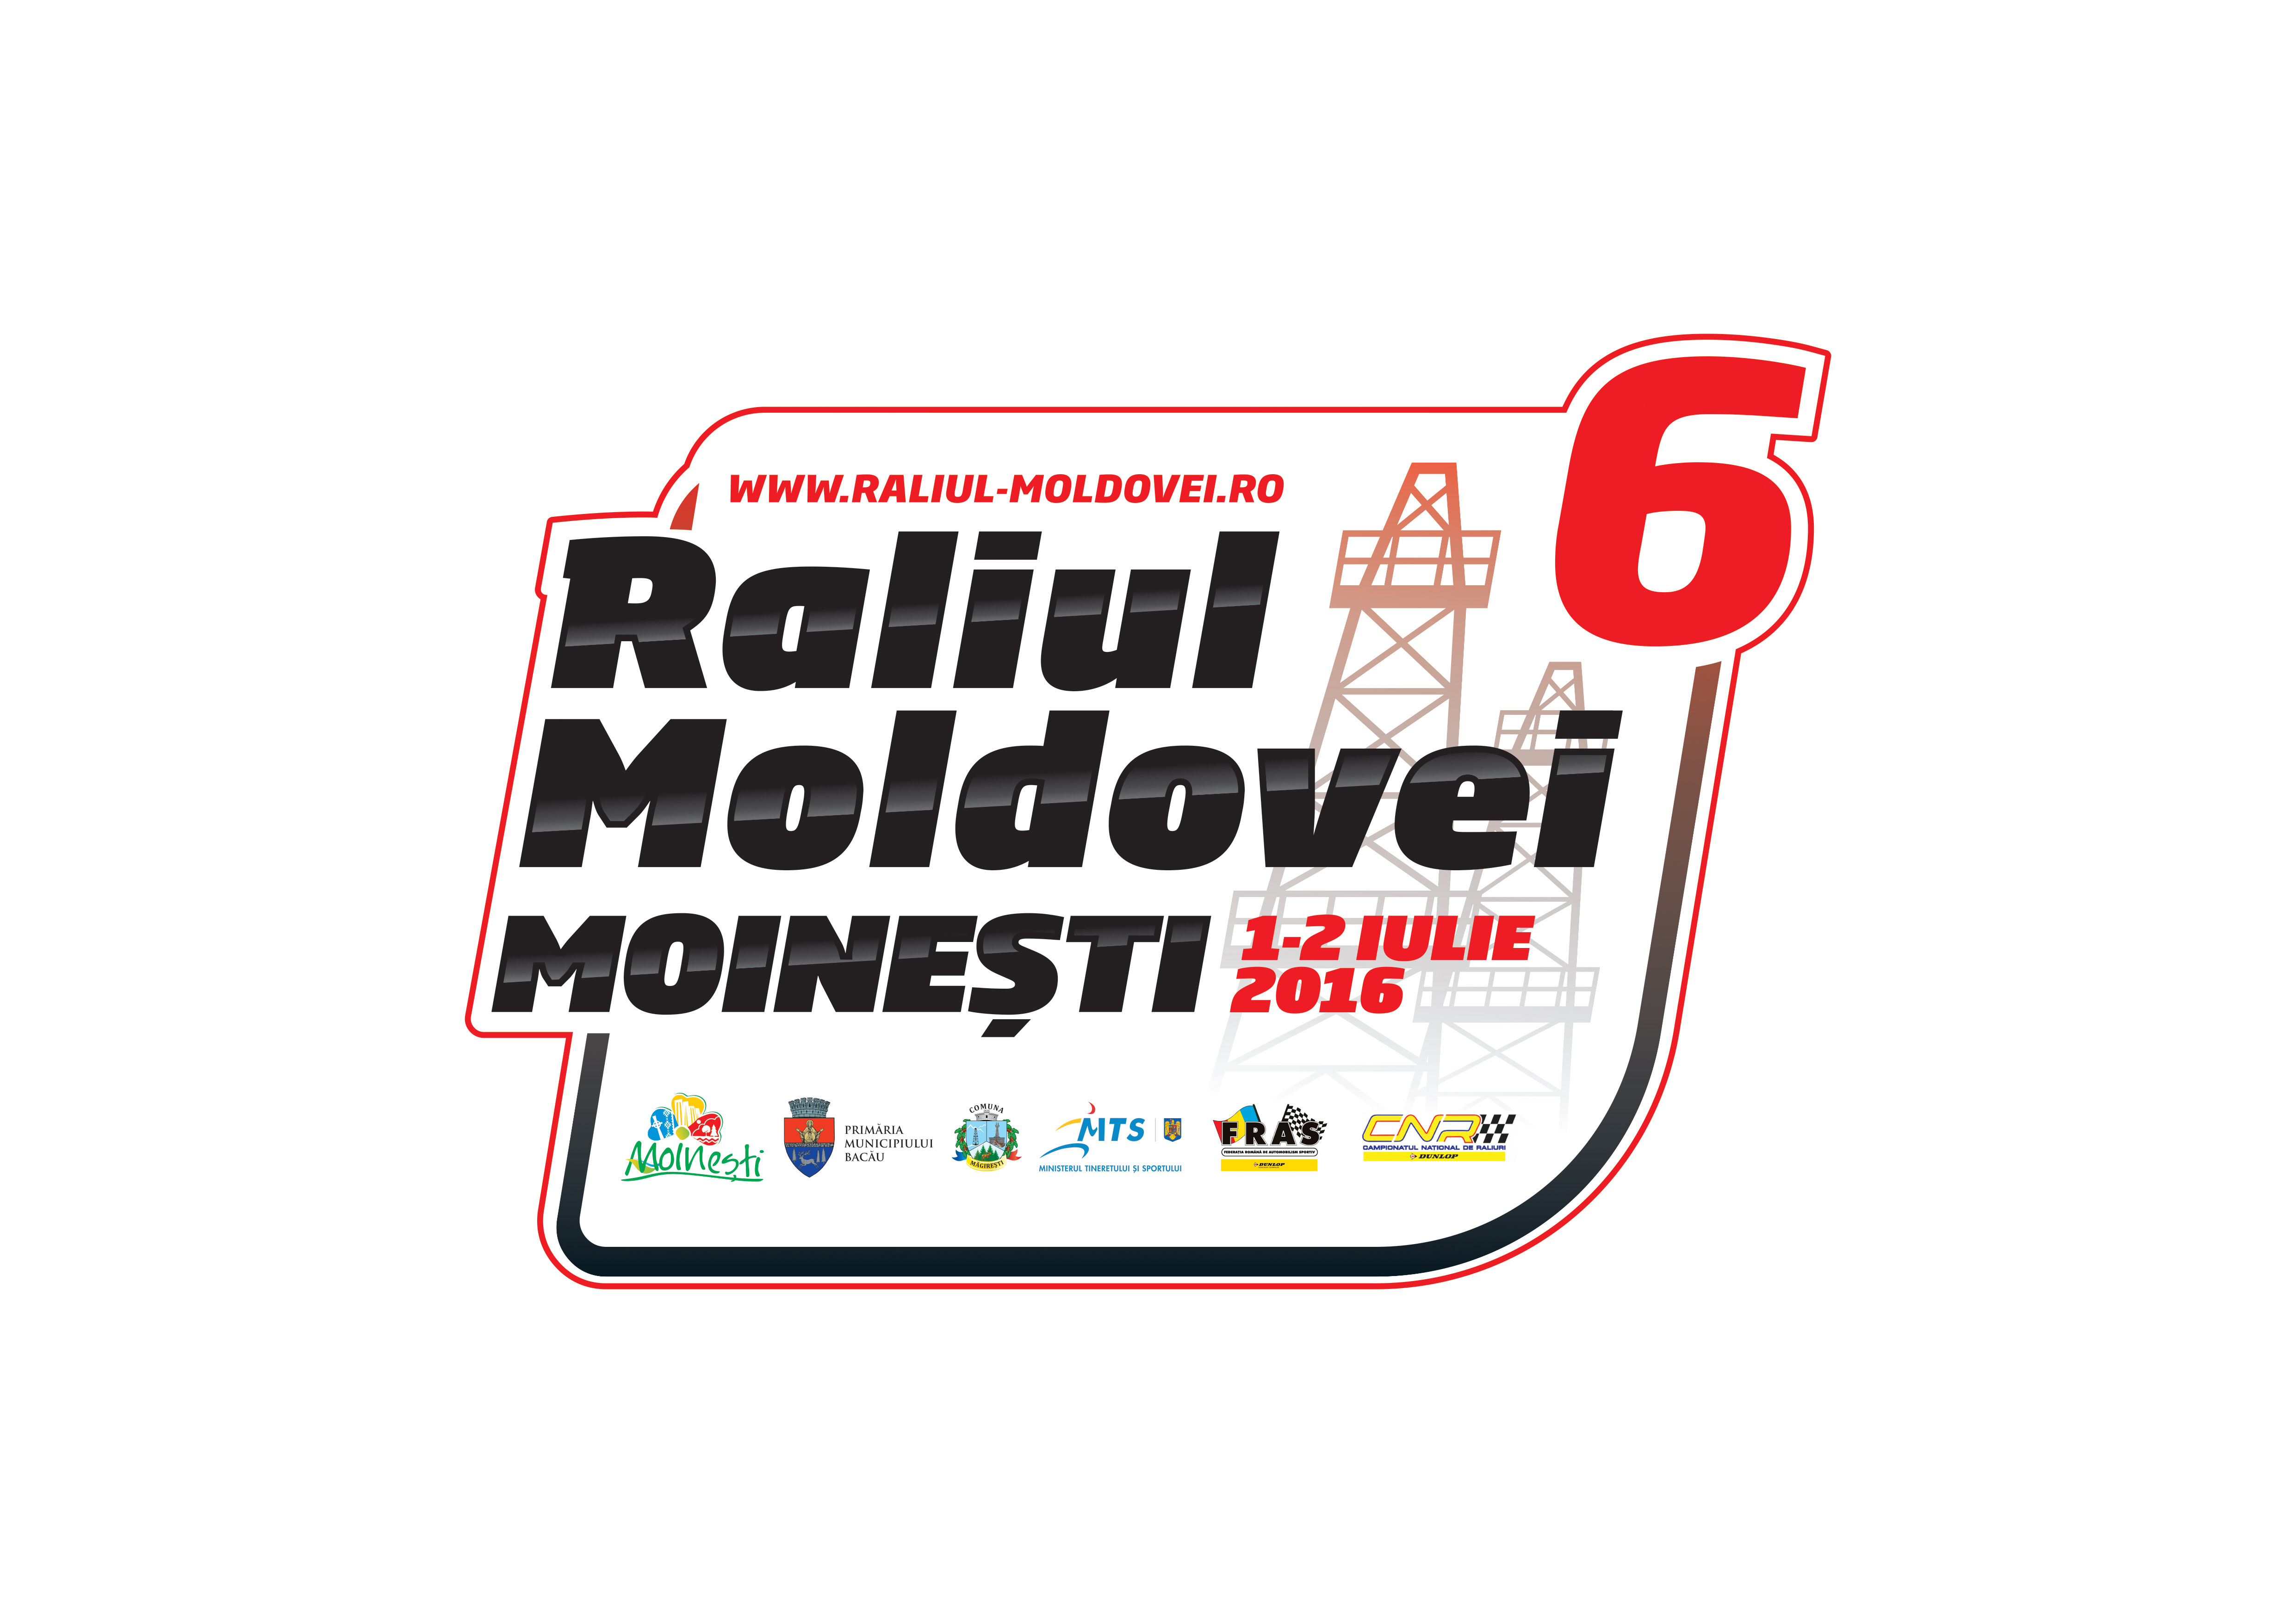 Au fost publicate documentele oficiale ale Raliul Moldovei Moinesti 2016